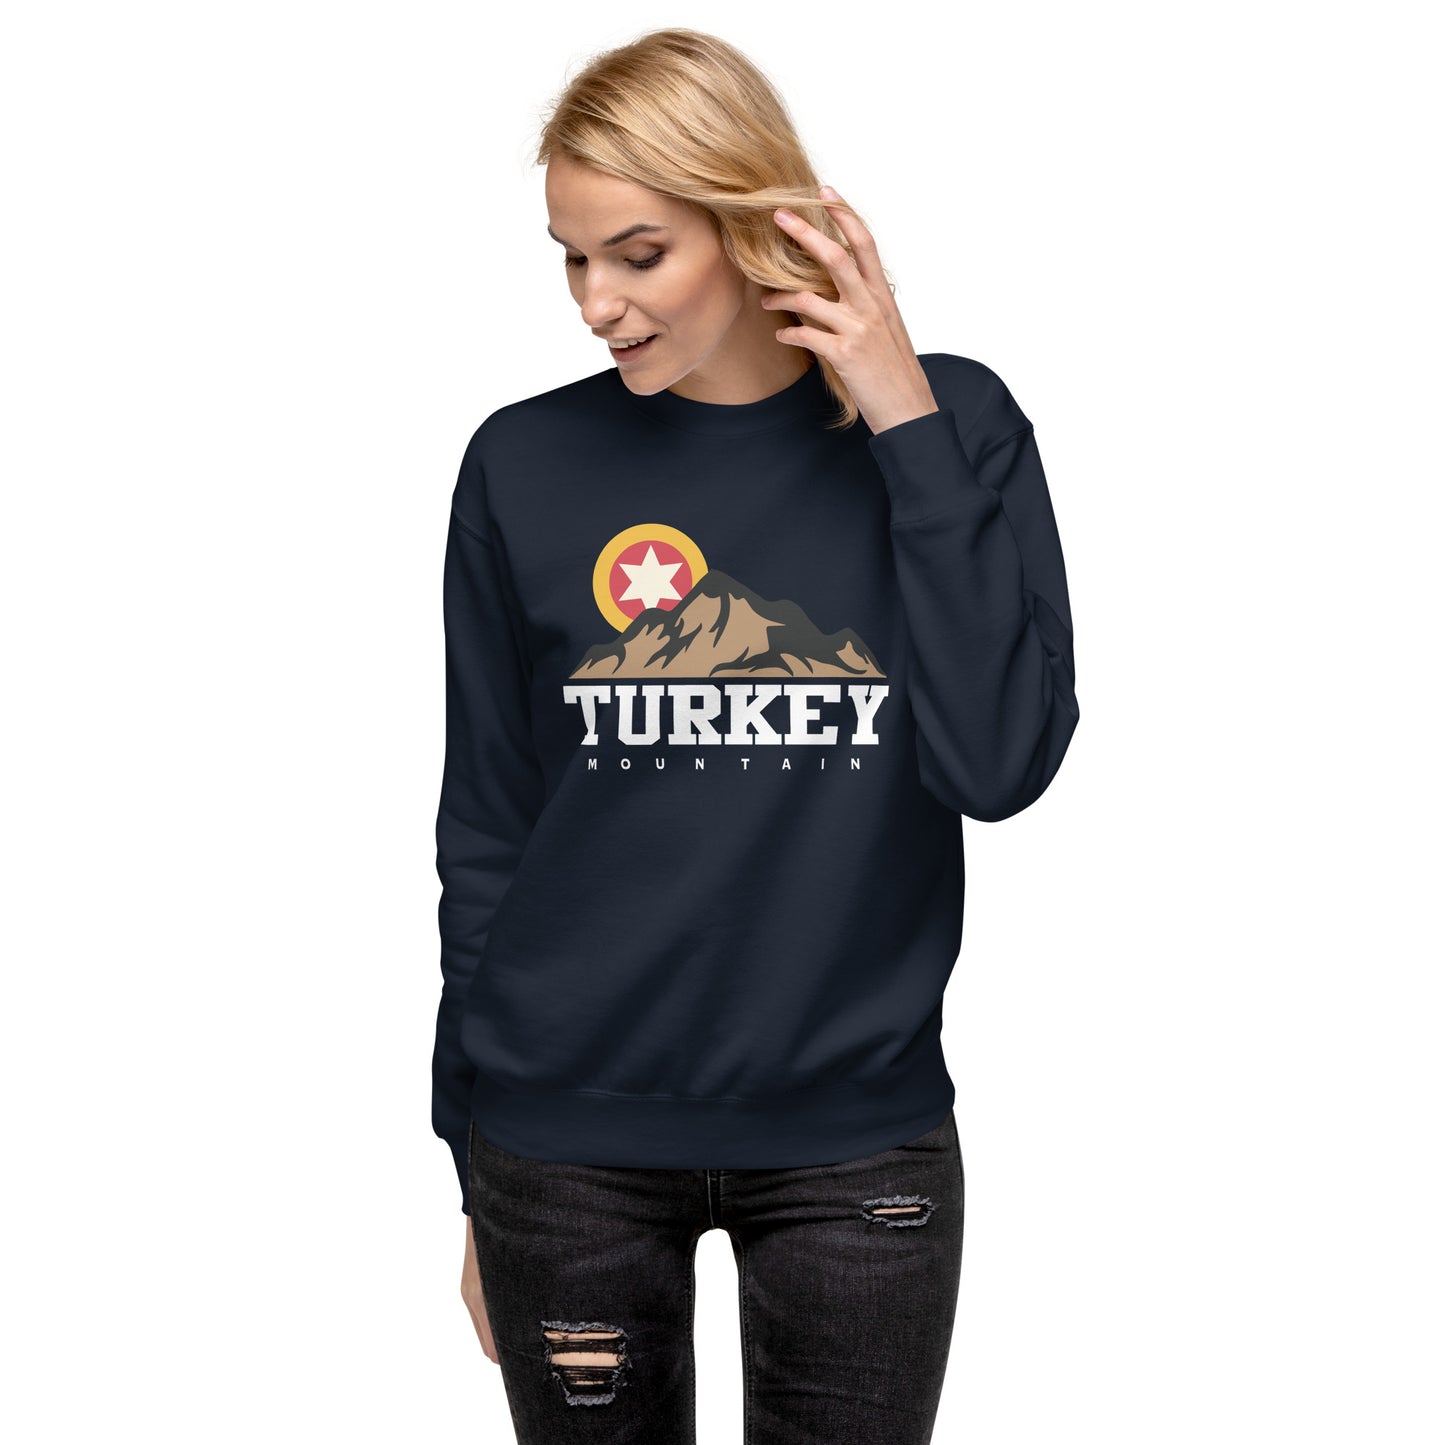 Turkey Mountain Sweatshirt